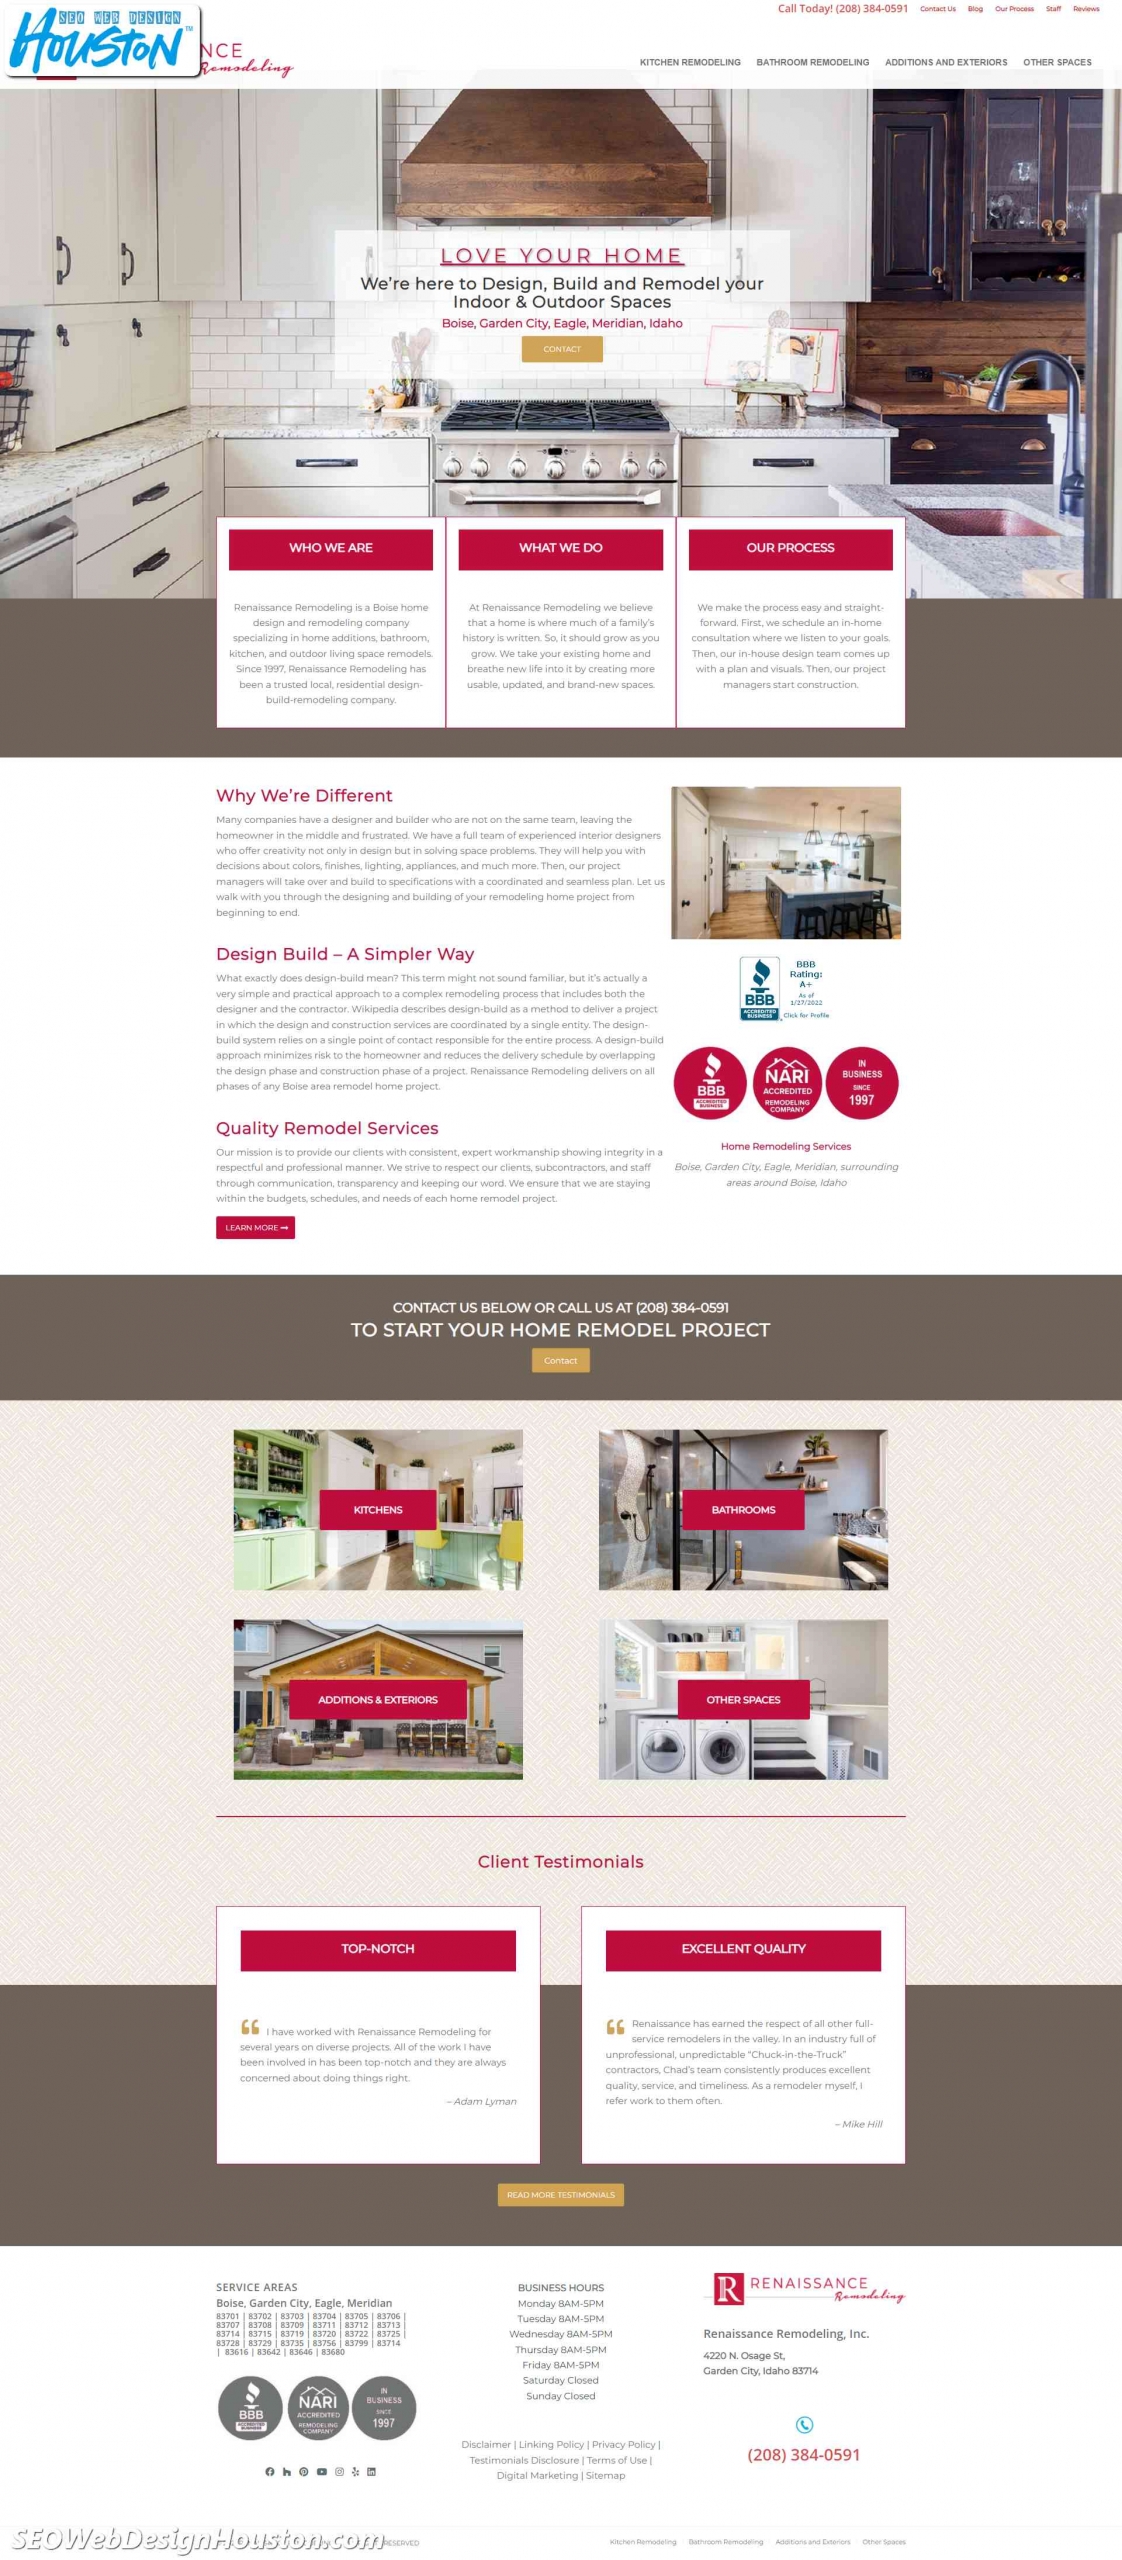 Houston SEO & Houston Website Designers - Customer Designed RemodelBoise.com